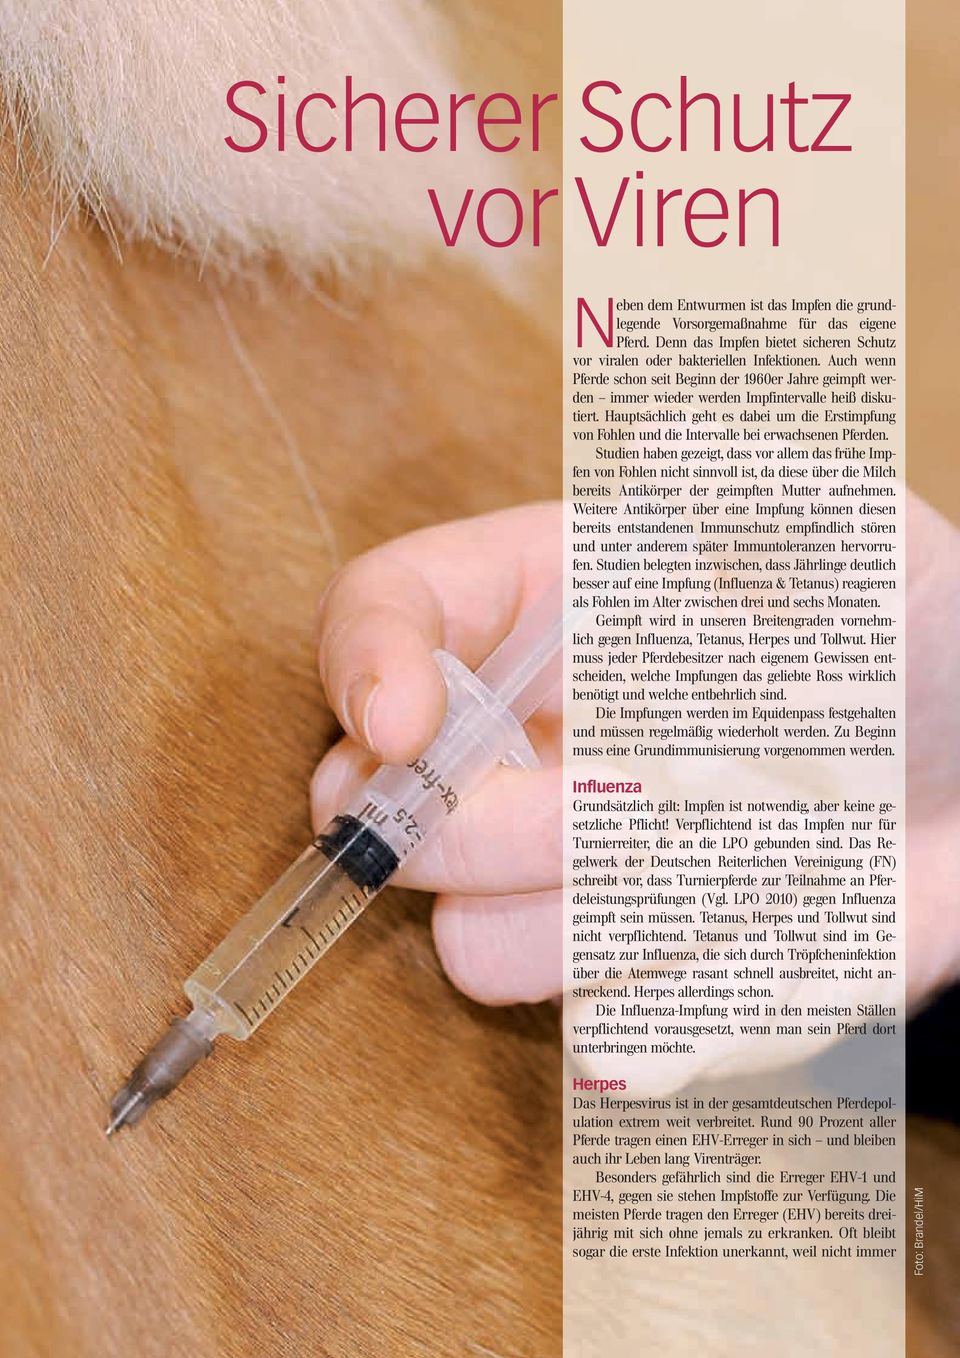 Hauptsächlich geht es dabei um die Erstimpfung von Fohlen und die Intervalle bei erwachsenen Pferden.